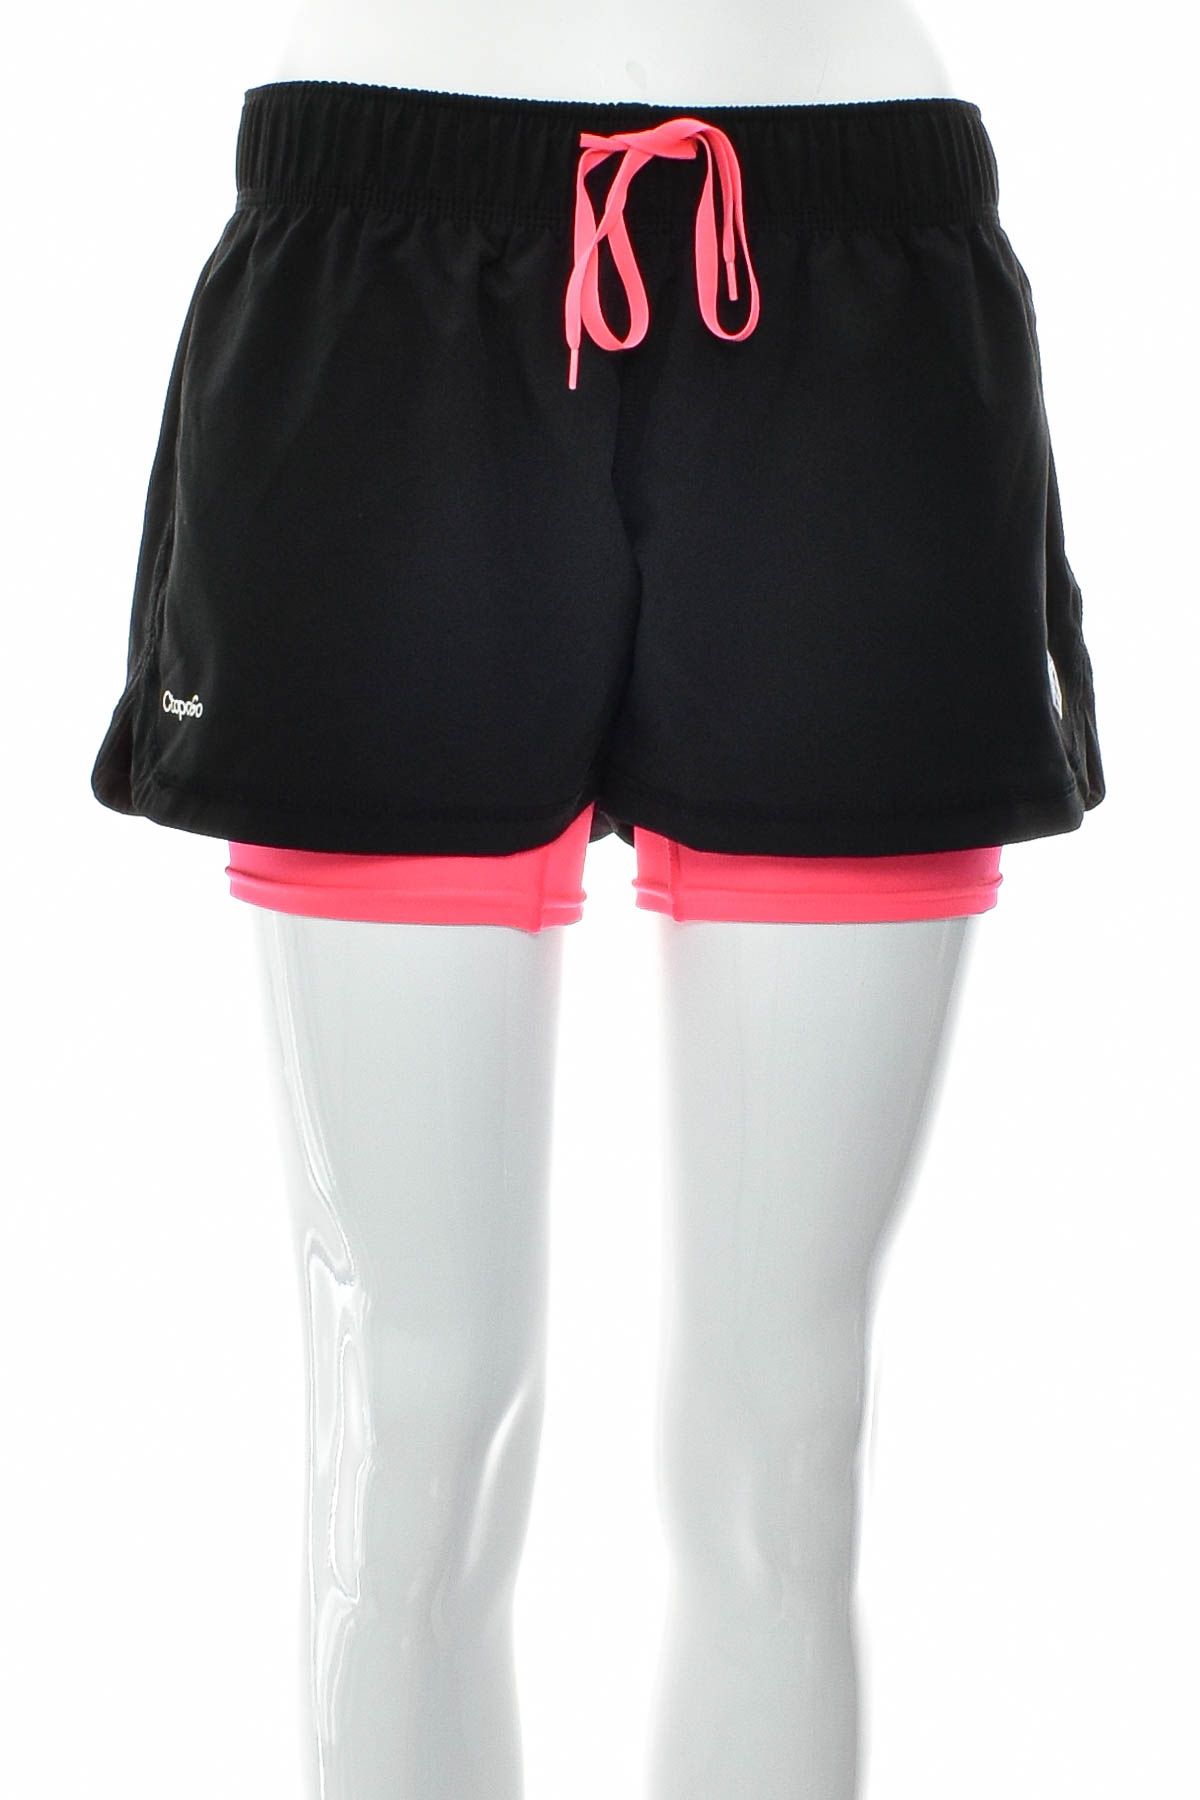 Women's shorts - CtopoGo - 0